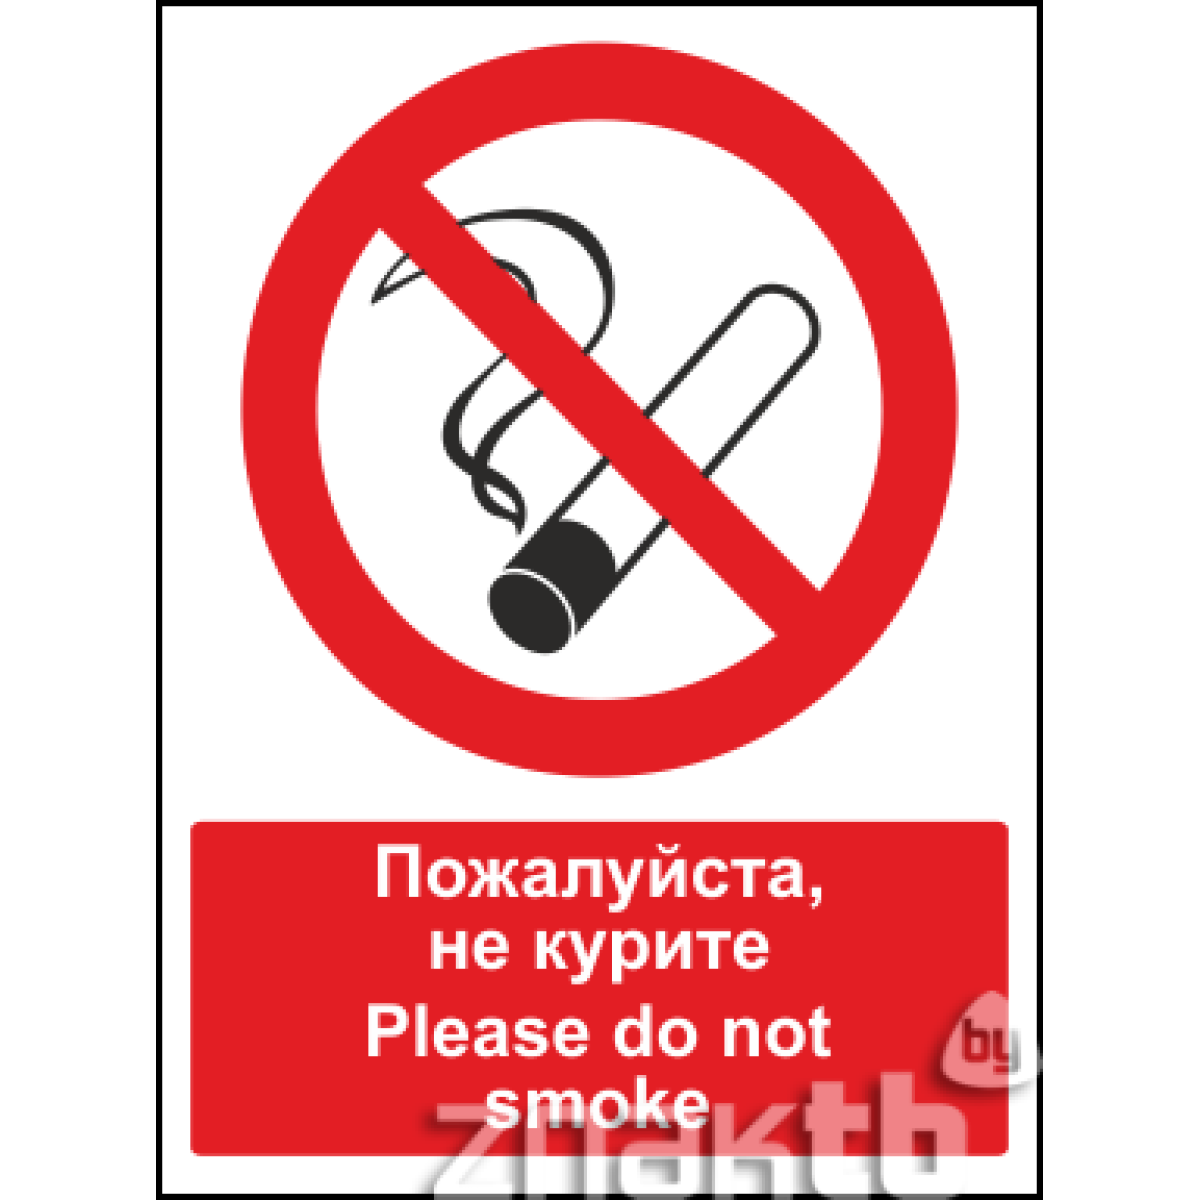 Знак Пожалуйста, не курите \ Please do not smoke (с поясняющей надписью)